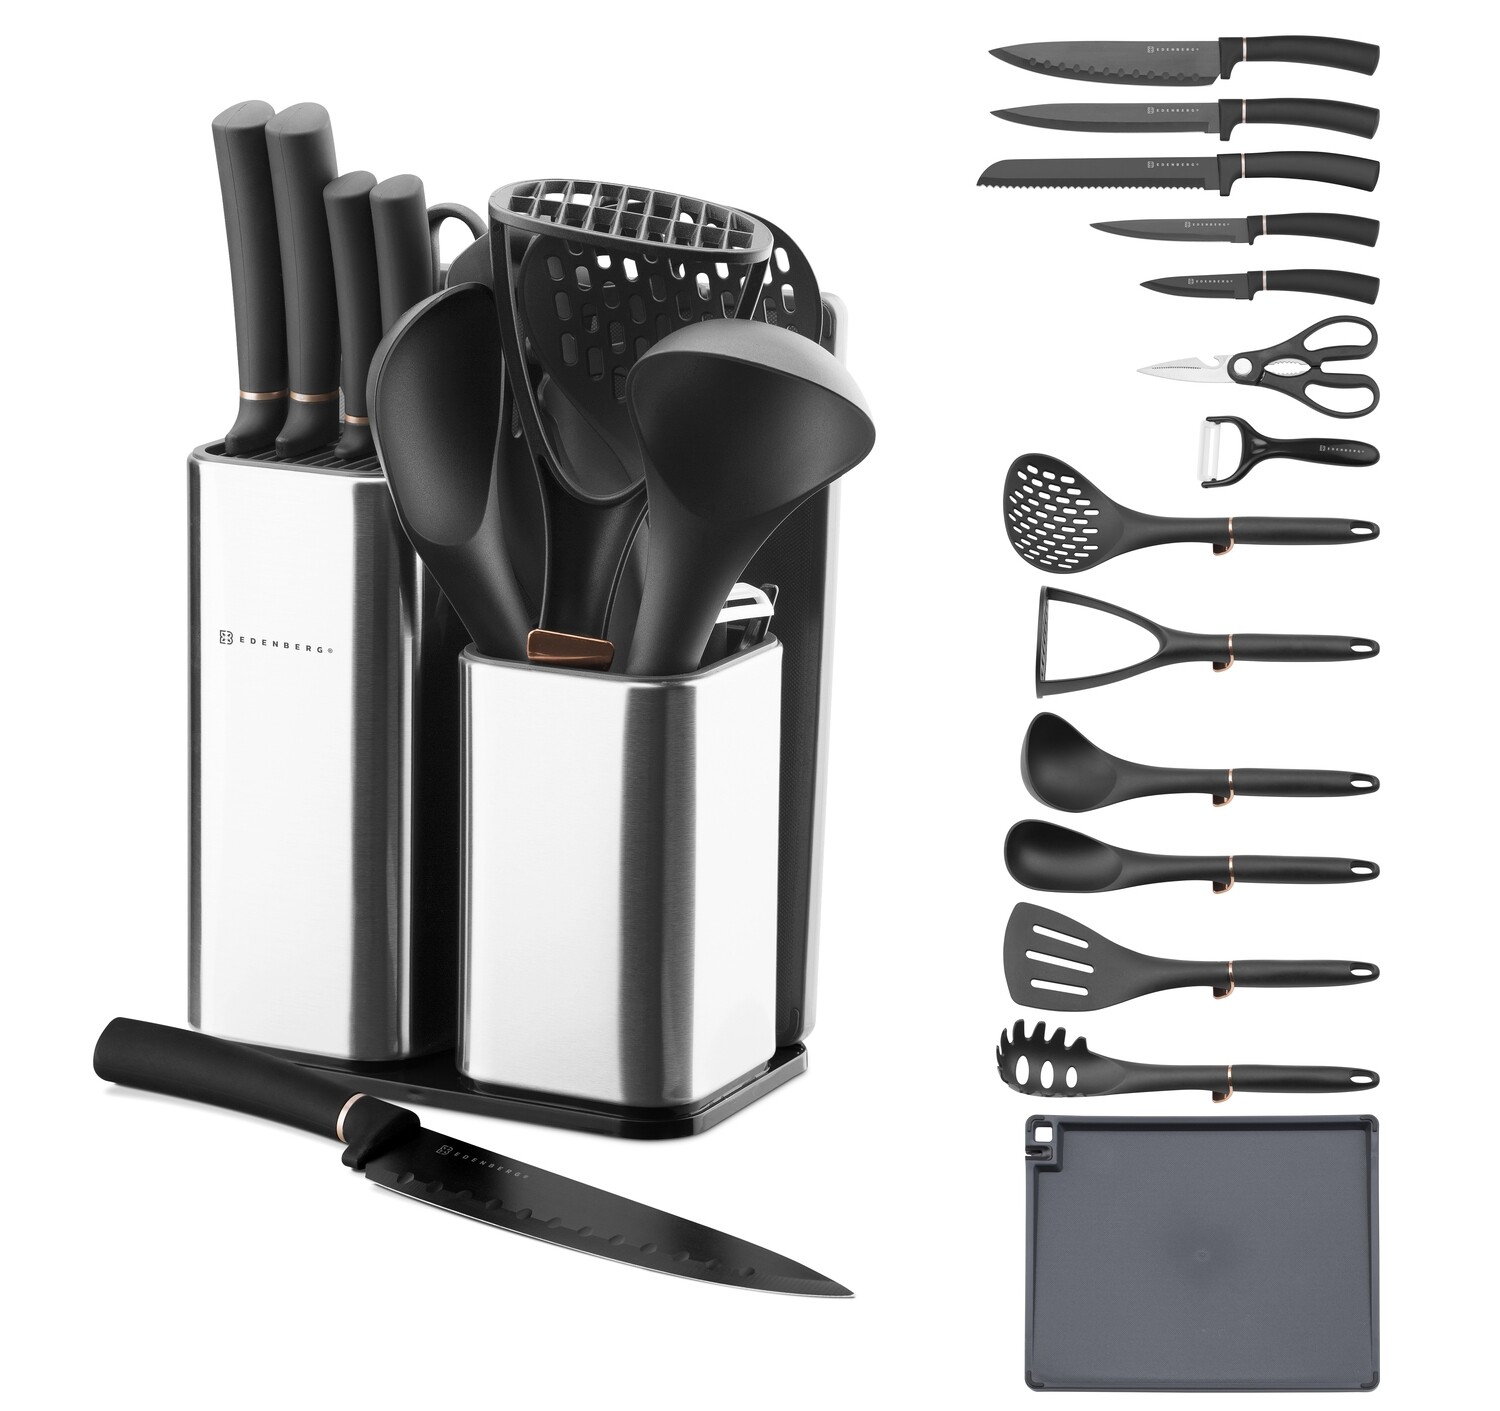 Edenberg 15pcs Set Of 5pcs Knives + 6pcs Kitchen Tools + 1pc Scissor & Peeler, Cutting Board, SS Block EB-3615